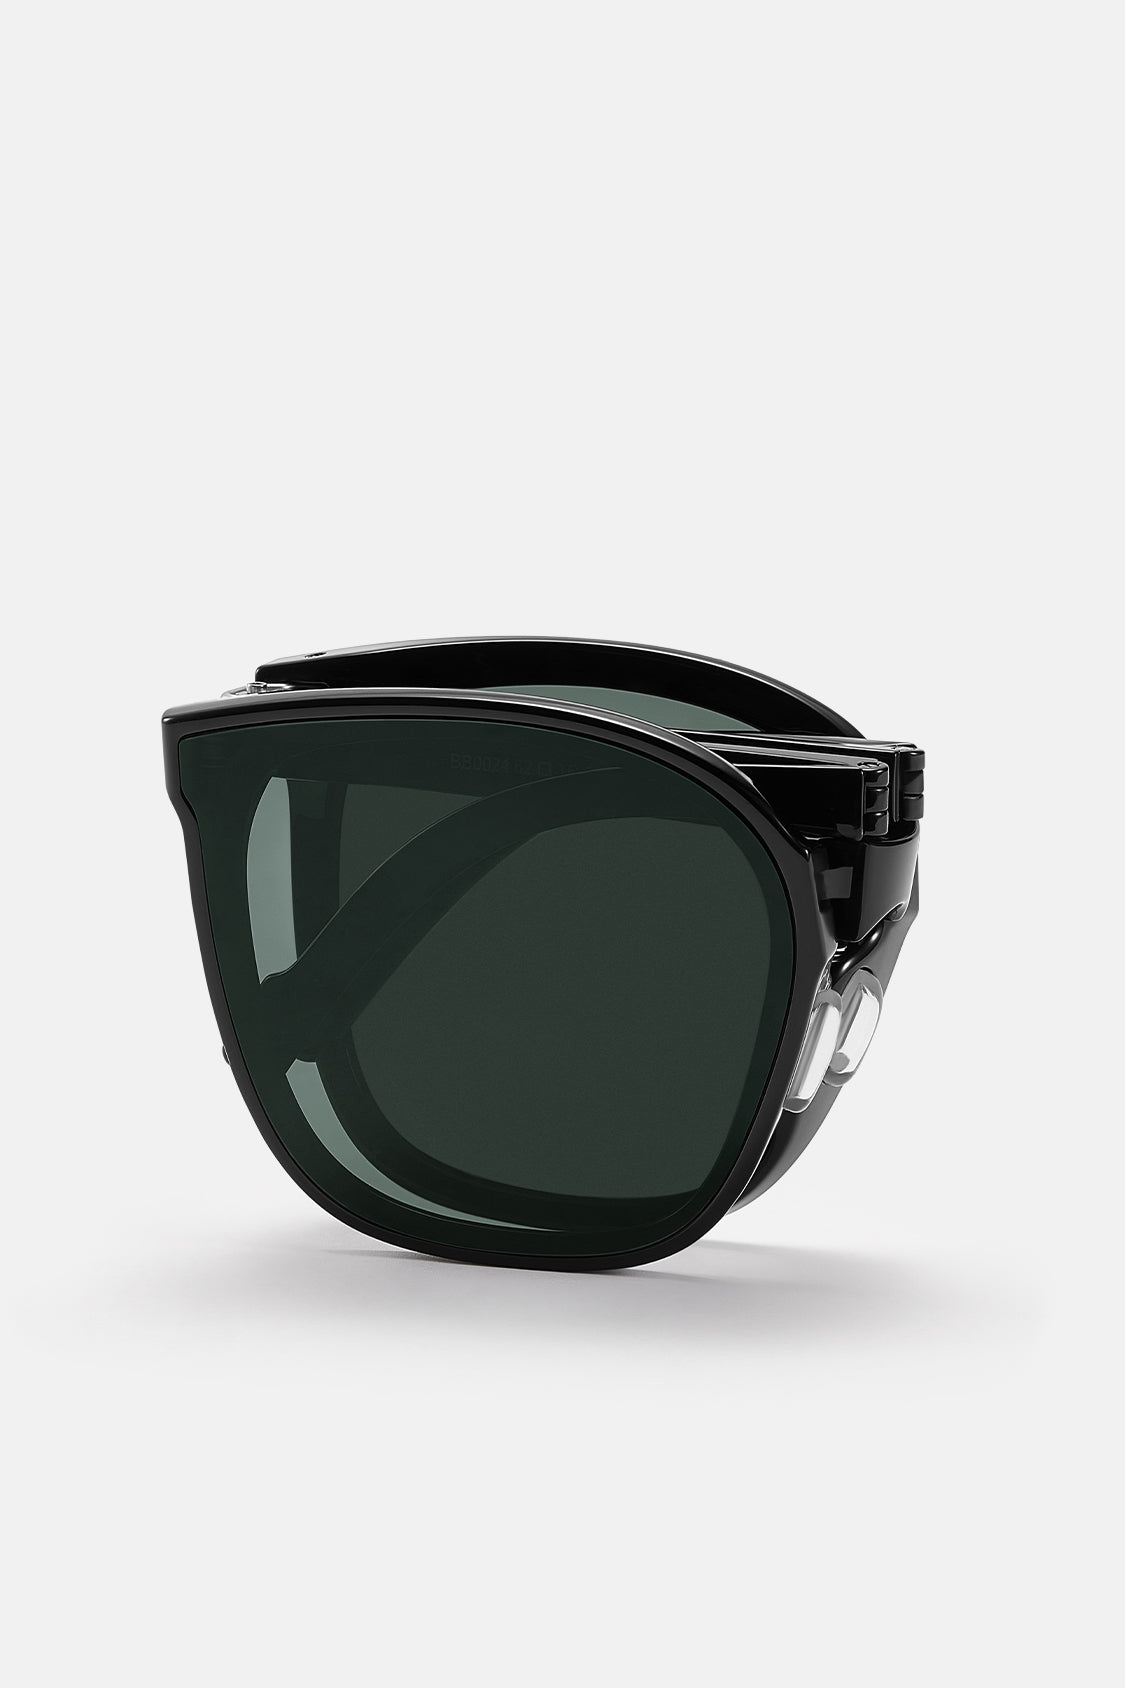 Polarized Folding Sunglasses for Women&Men, Beneunder UV400 Protection Super Lightweight Designer Sunglasses for Driving, Hiking, Golf